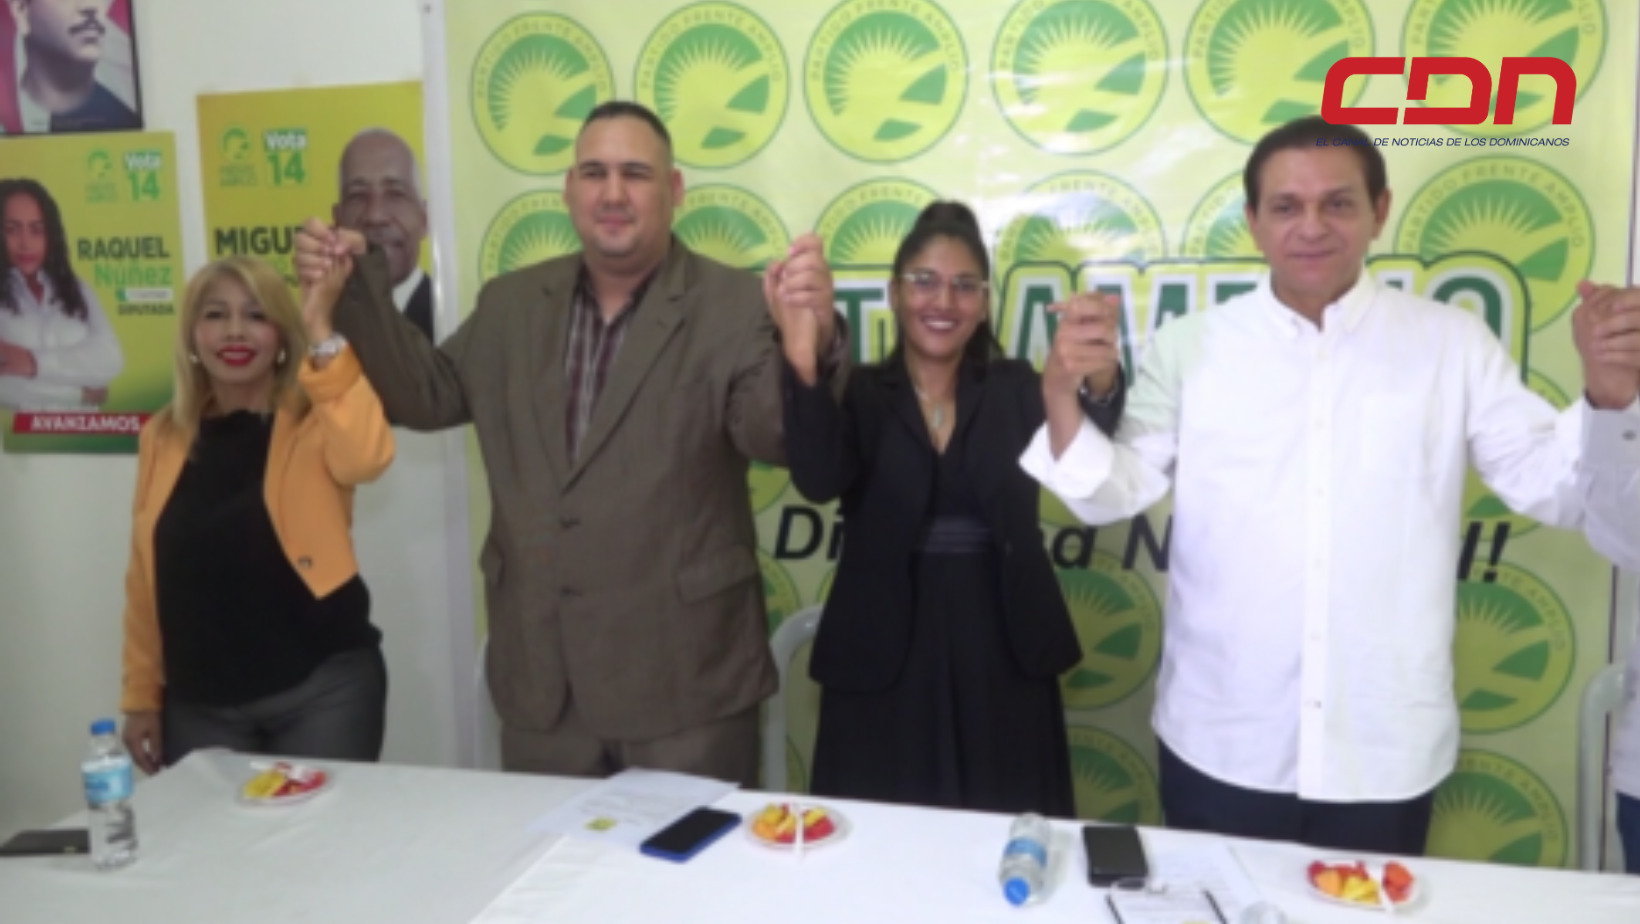 Candidatura a senador por Santiago Daniel recibiendo apoyo del Partido Frente Amplio. Foto CDN Digital